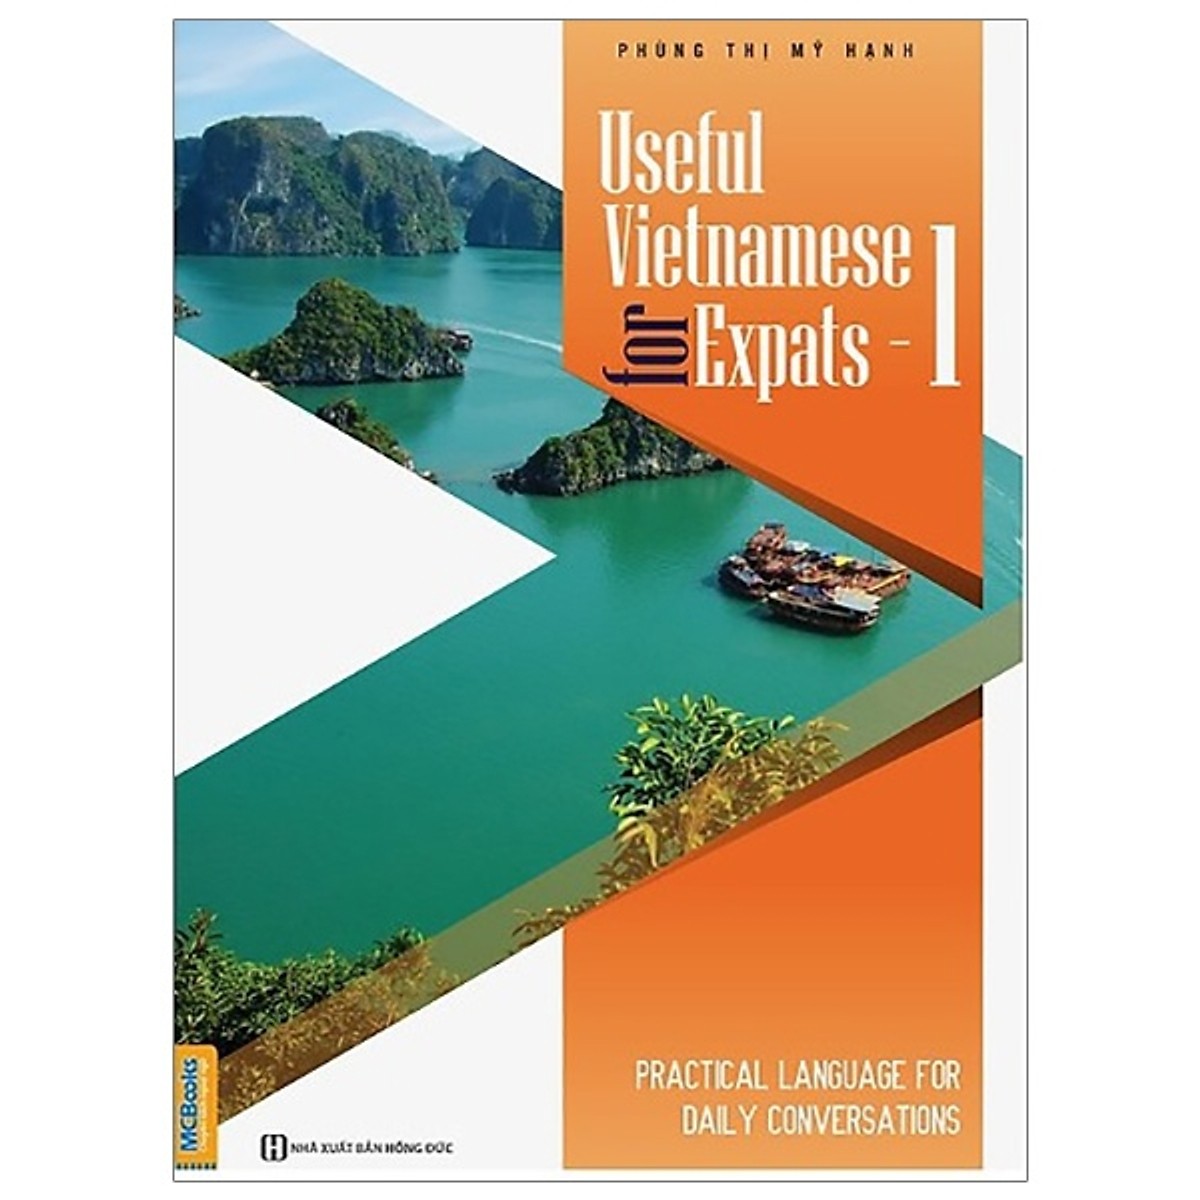 Useful Vietnamese For Expats - 1 (Quét QR Code tại App MCBooks Để Nhận Bộ Quà Tặng)